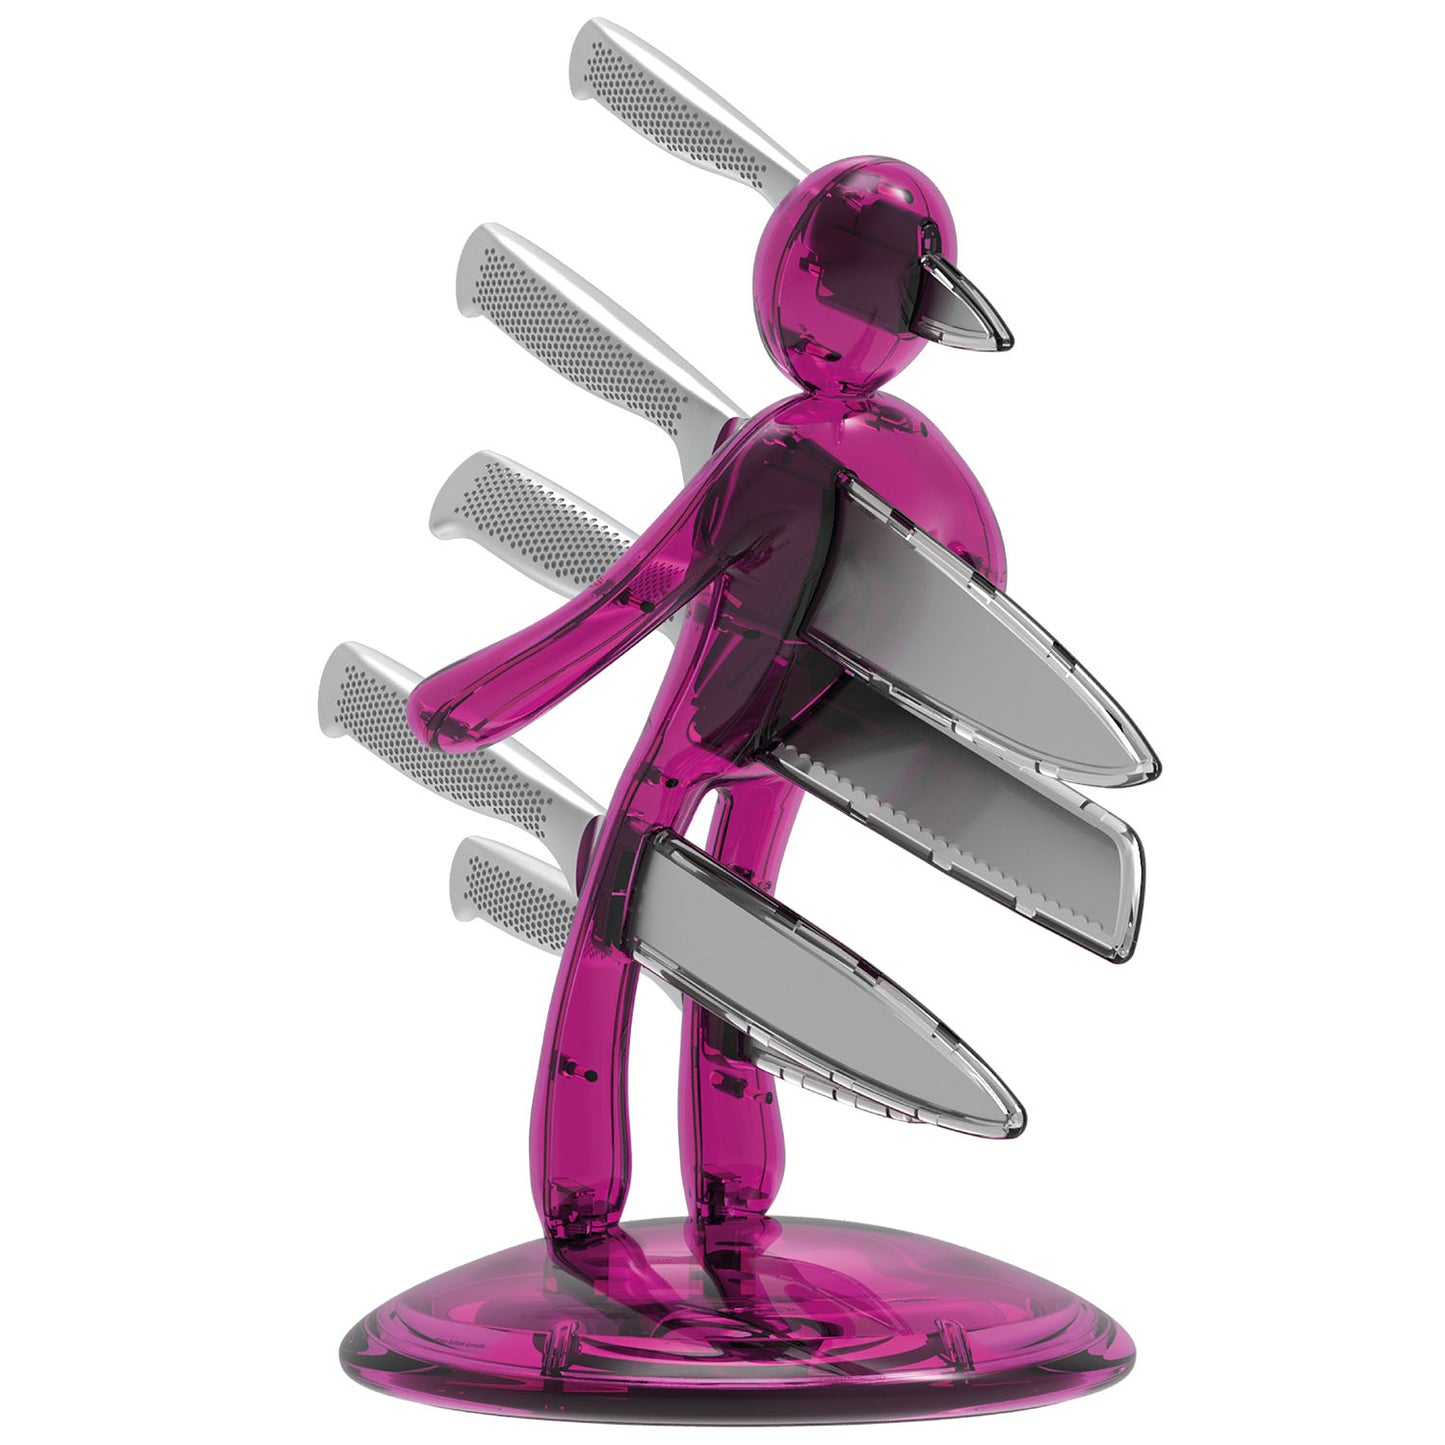 Voodoo/TheEx “Classic Edition” 刀具套装 - 粉色半透明塑料刀架